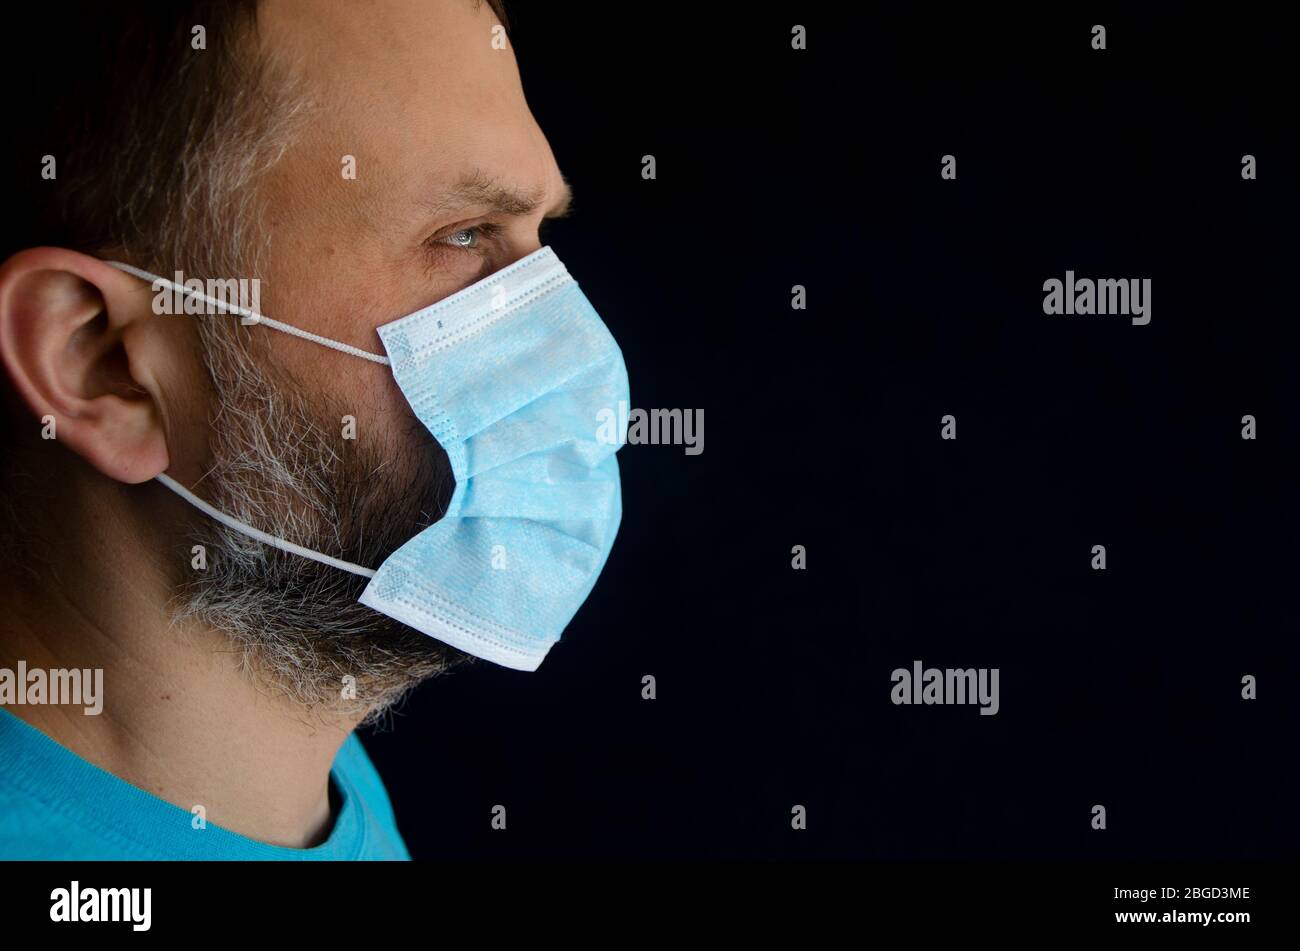 Le visage d'un homme dans un masque médical de protection bleu Banque D'Images